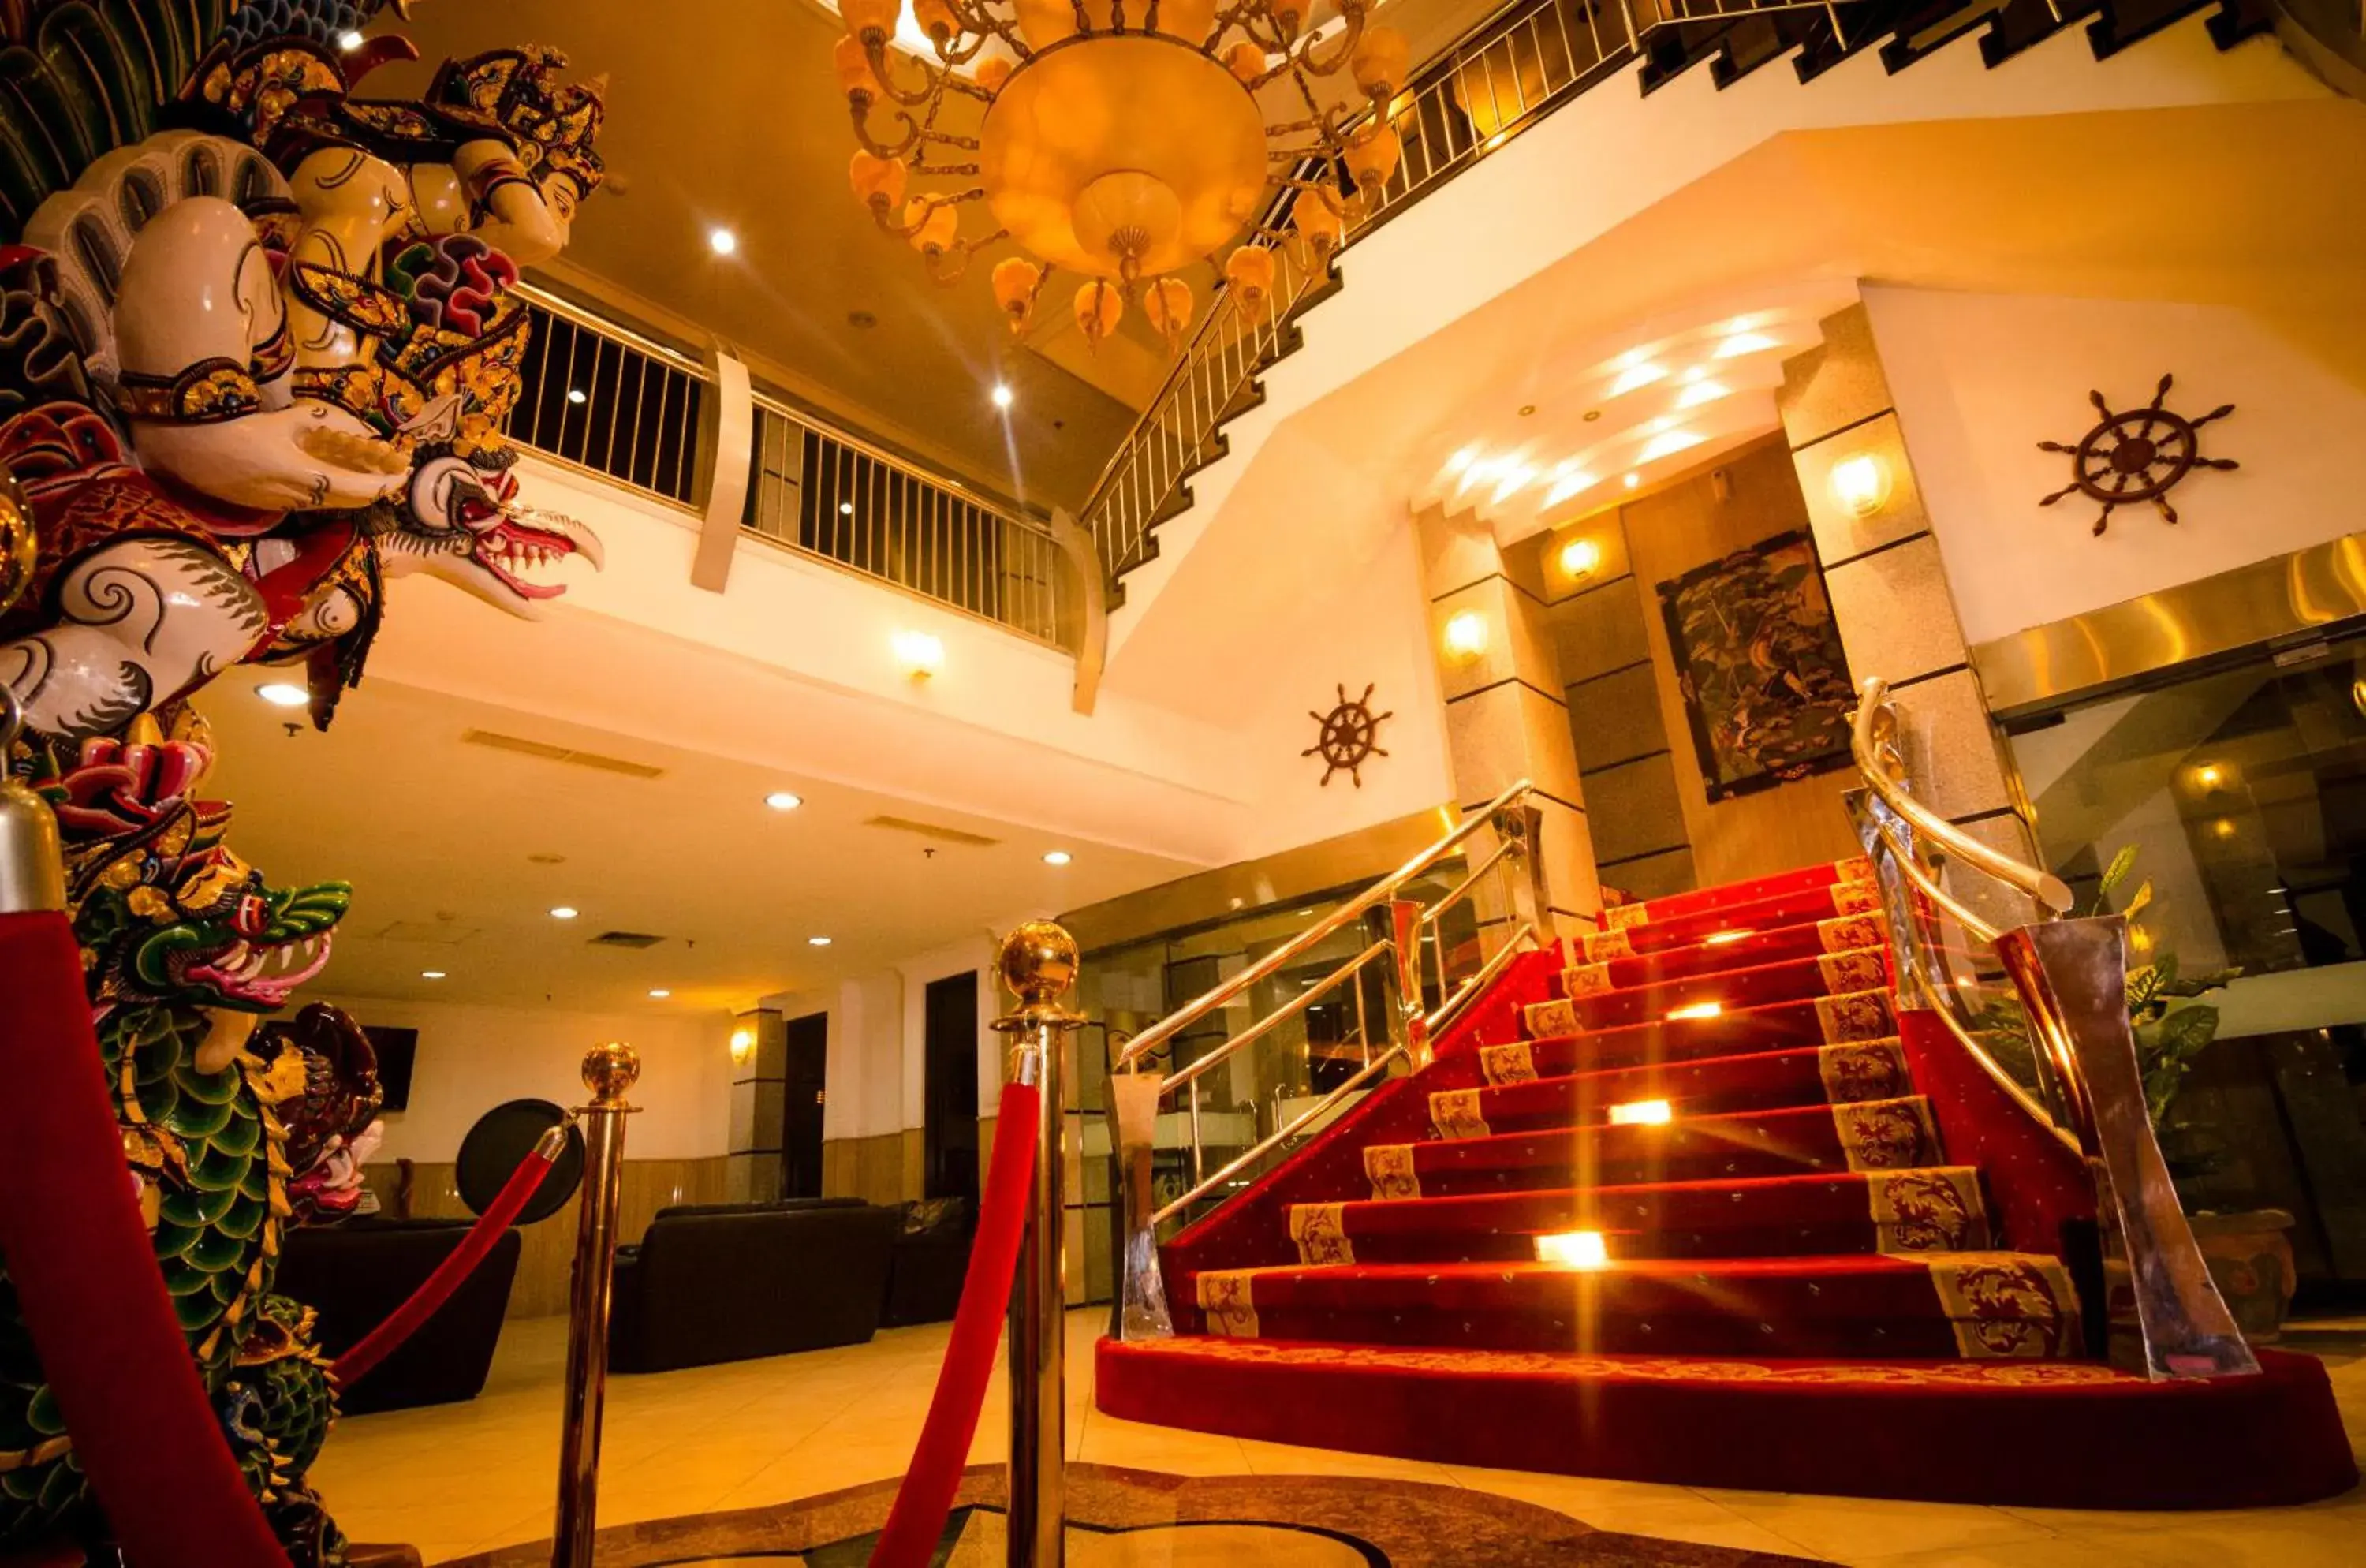 Lobby or reception, Lobby/Reception in Bali Paradise City Hotel